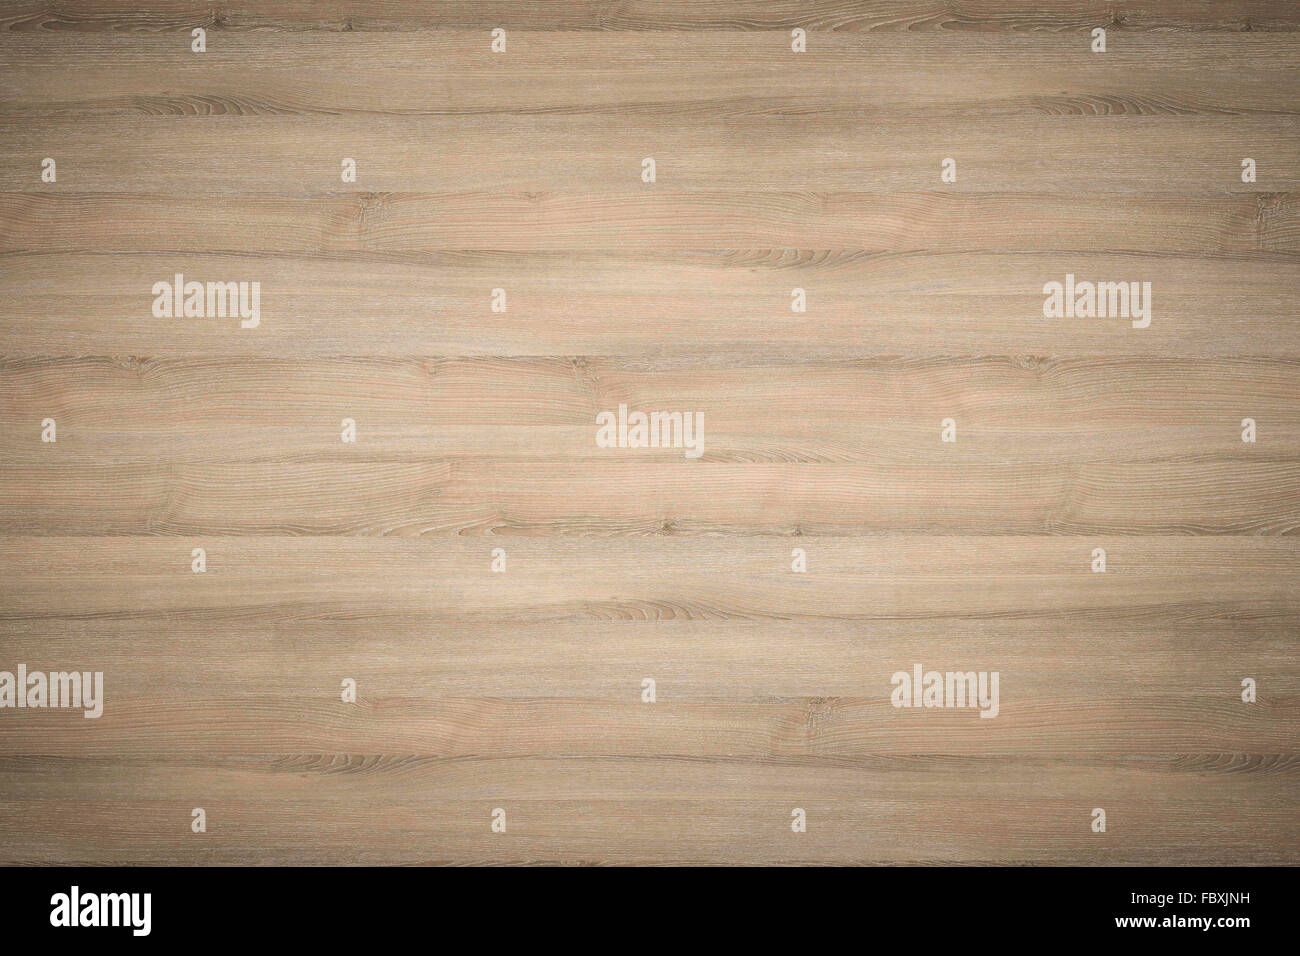 En bois qualité Hi utilisé comme arrière-plan de texture - lignes horizontales Banque D'Images